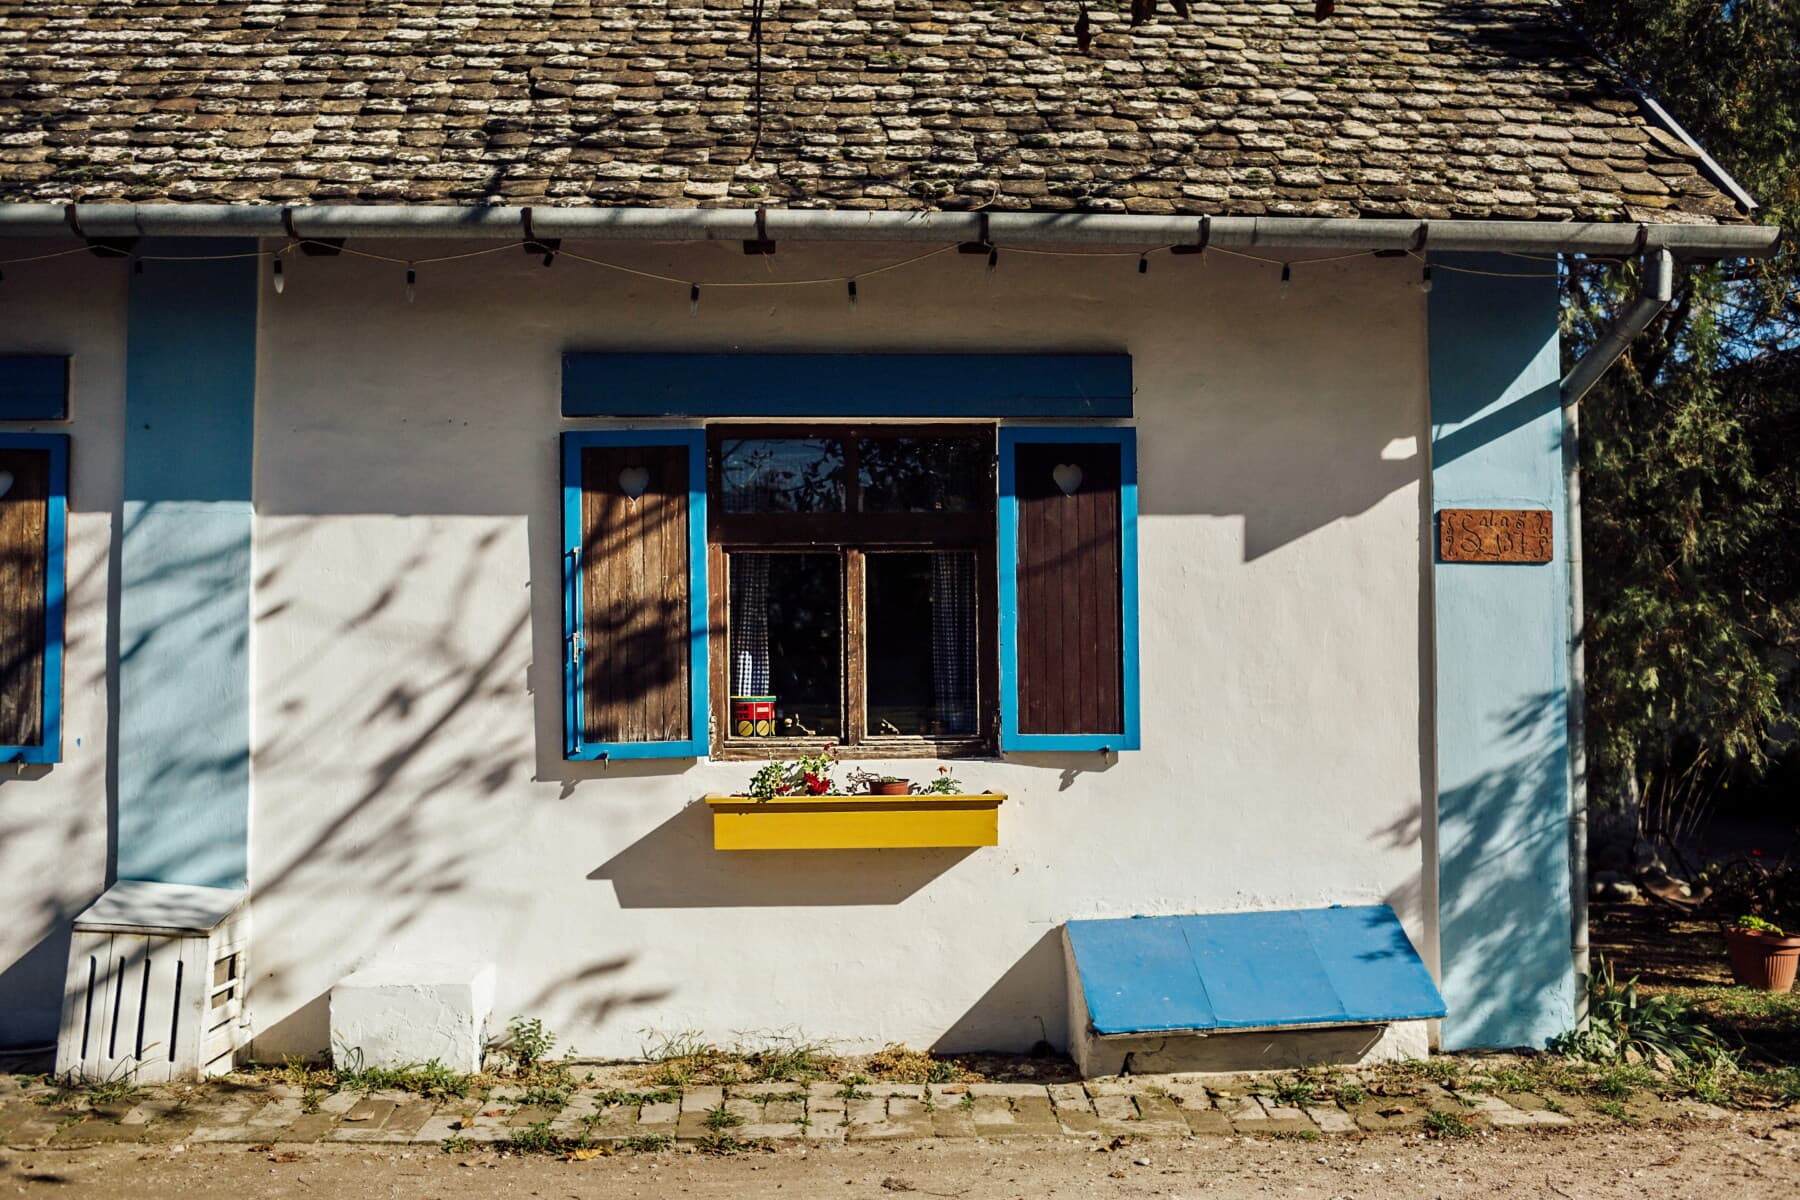 rural, village, vintage, windows, roof, house, garage, architecture, wood, window